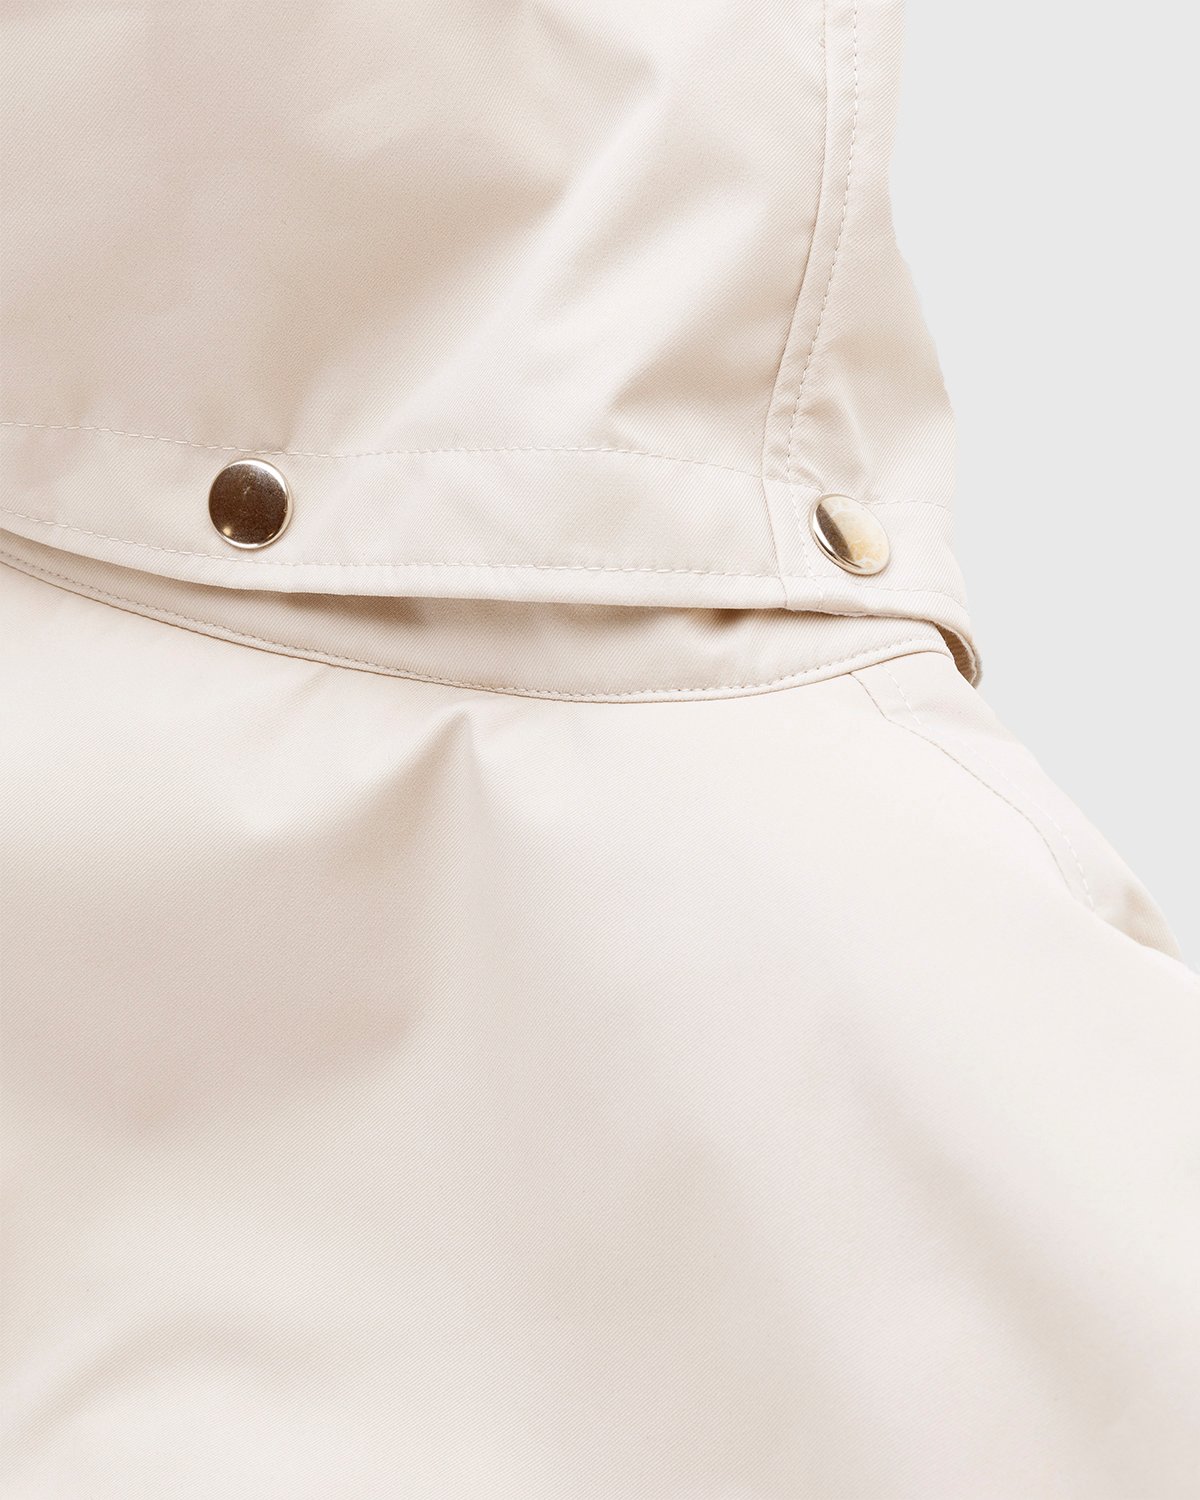 Arnar Mar Jonsson - Sympatex Patch Pocket Outerwear Jacket Beige - Clothing - Beige - Image 5